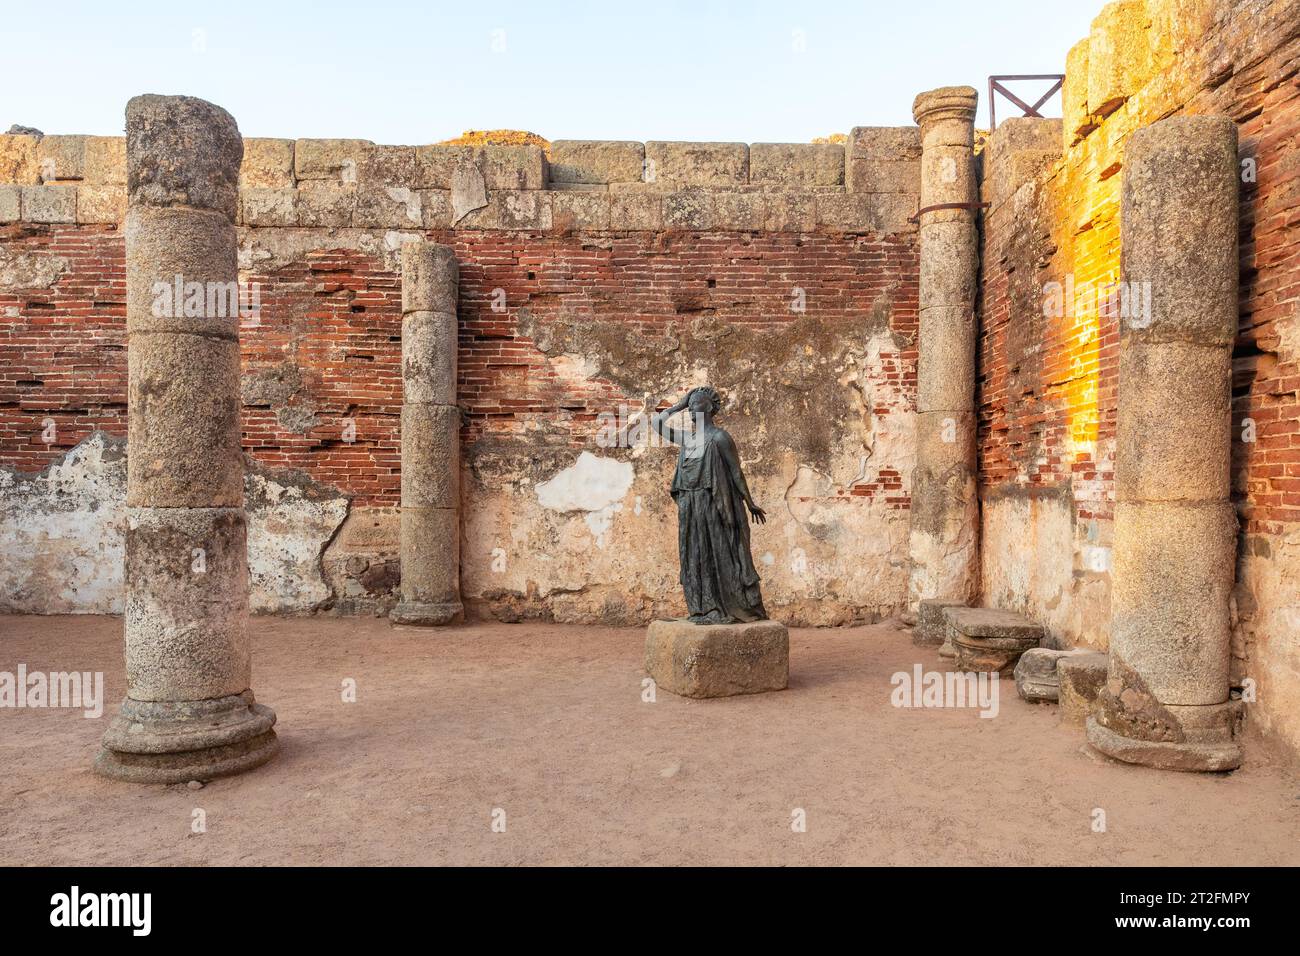 Römische Ruinen von Merida, Skulptur einer Frau am Eingang des römischen Theaters. Extremadura, Spanien Stockfoto